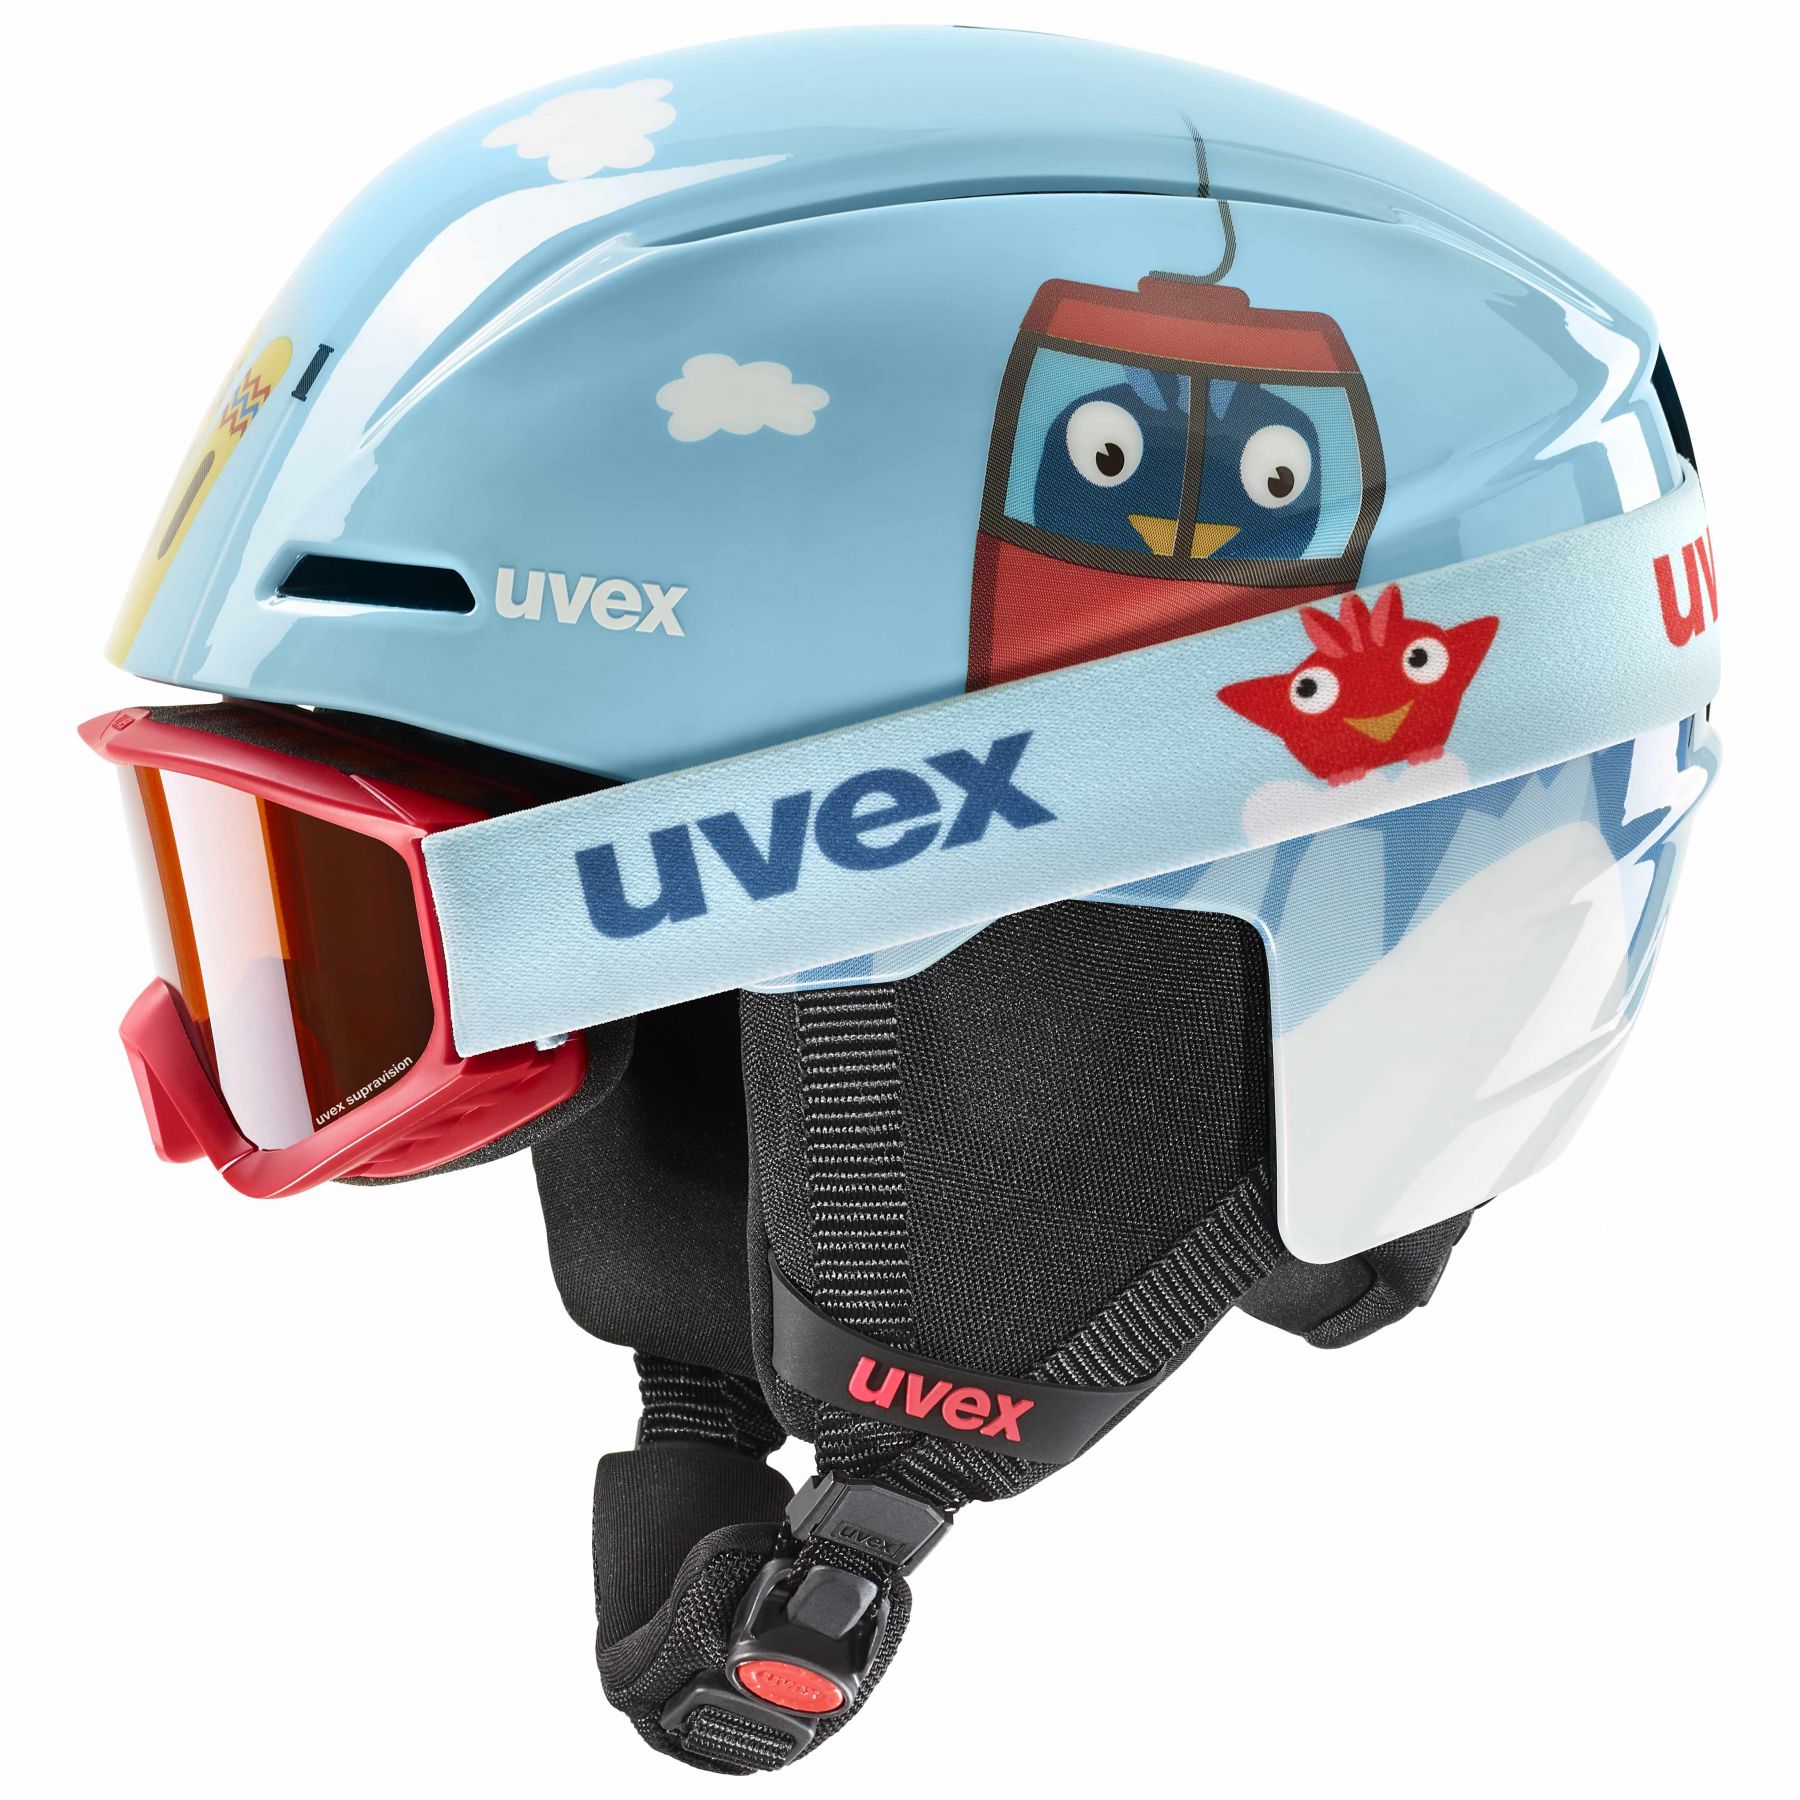 Billede af Uvex Viti Set, skihjelm + skibriller, junior, lyseblå hos Skisport.dk